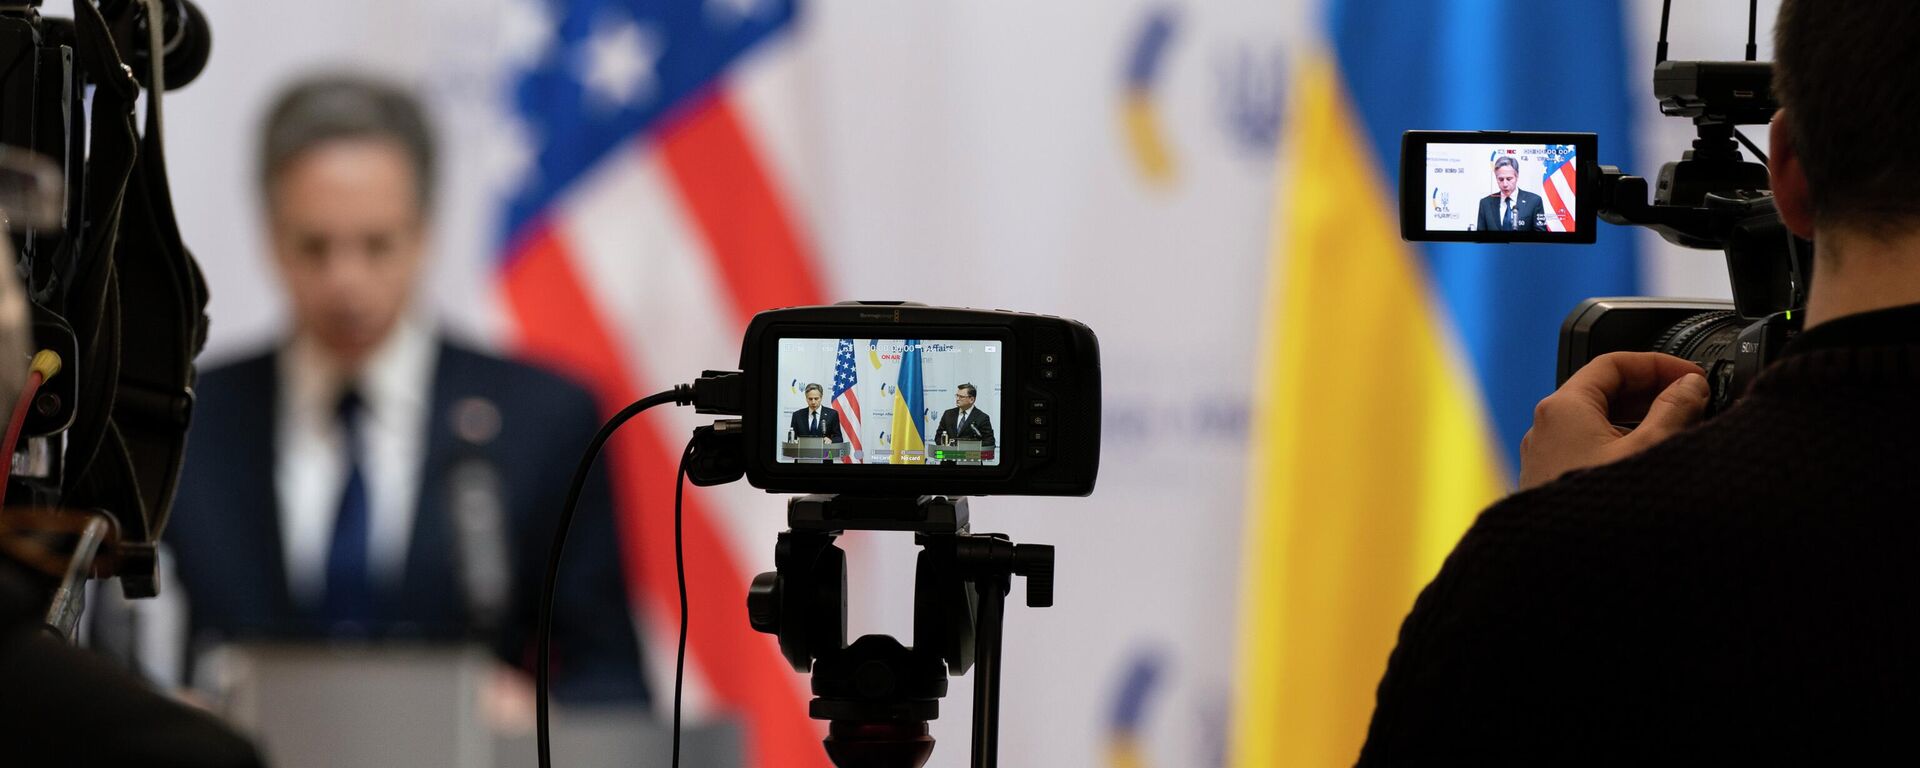 Ngoại trưởng Hoa Kỳ Antony Blinken và Ngoại trưởng Ukraina Dmitry Kuleba trong cuộc họp báo ở Kiev - Sputnik Việt Nam, 1920, 09.11.2022